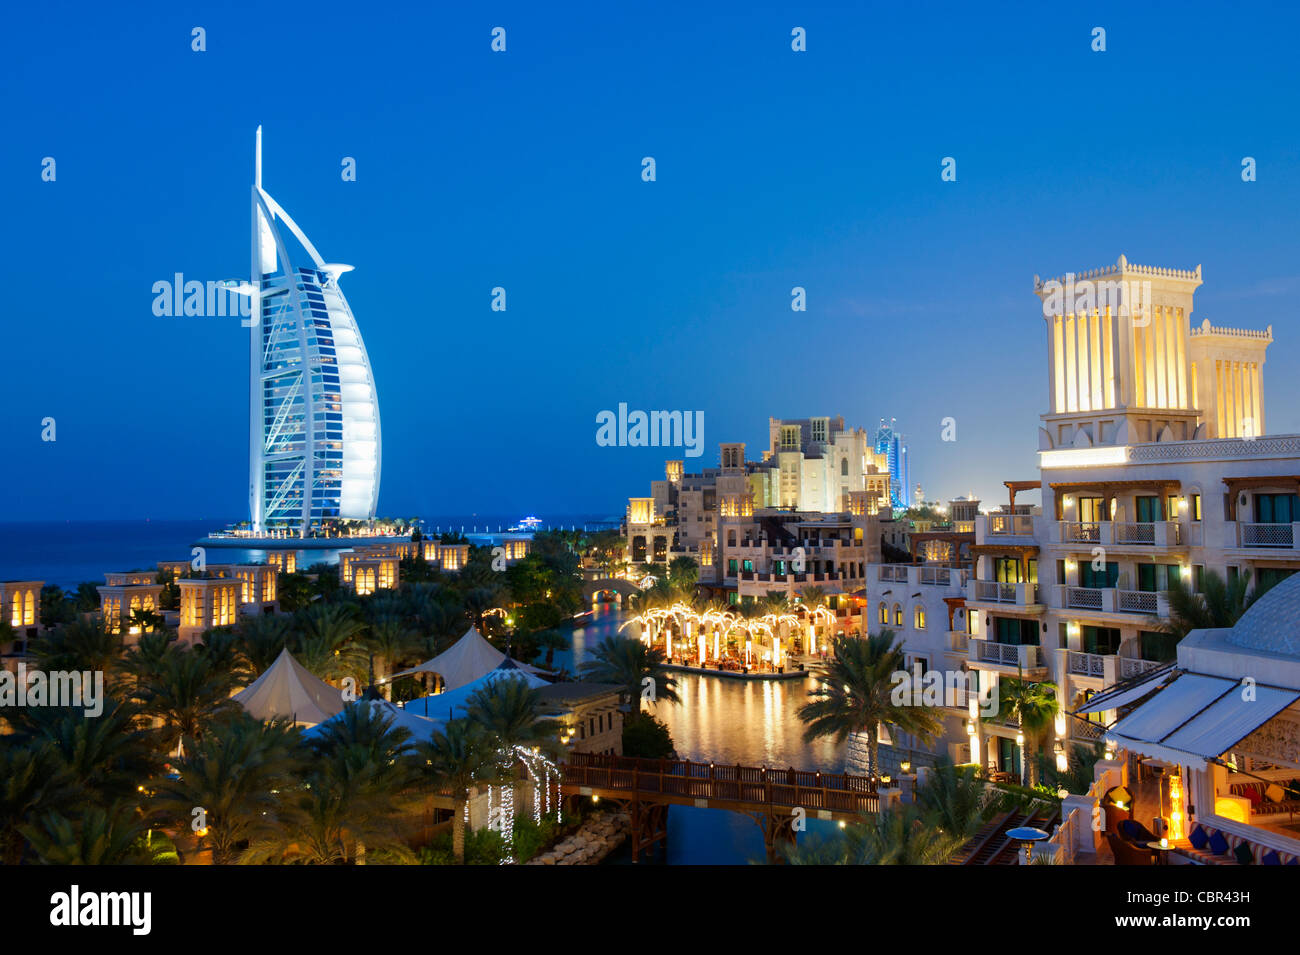 Avis d'hôtels de villégiature à Madinat Jumeirah, Burj Al Arab et la nuit à Dubaï en Émirats Arabes Unis Banque D'Images